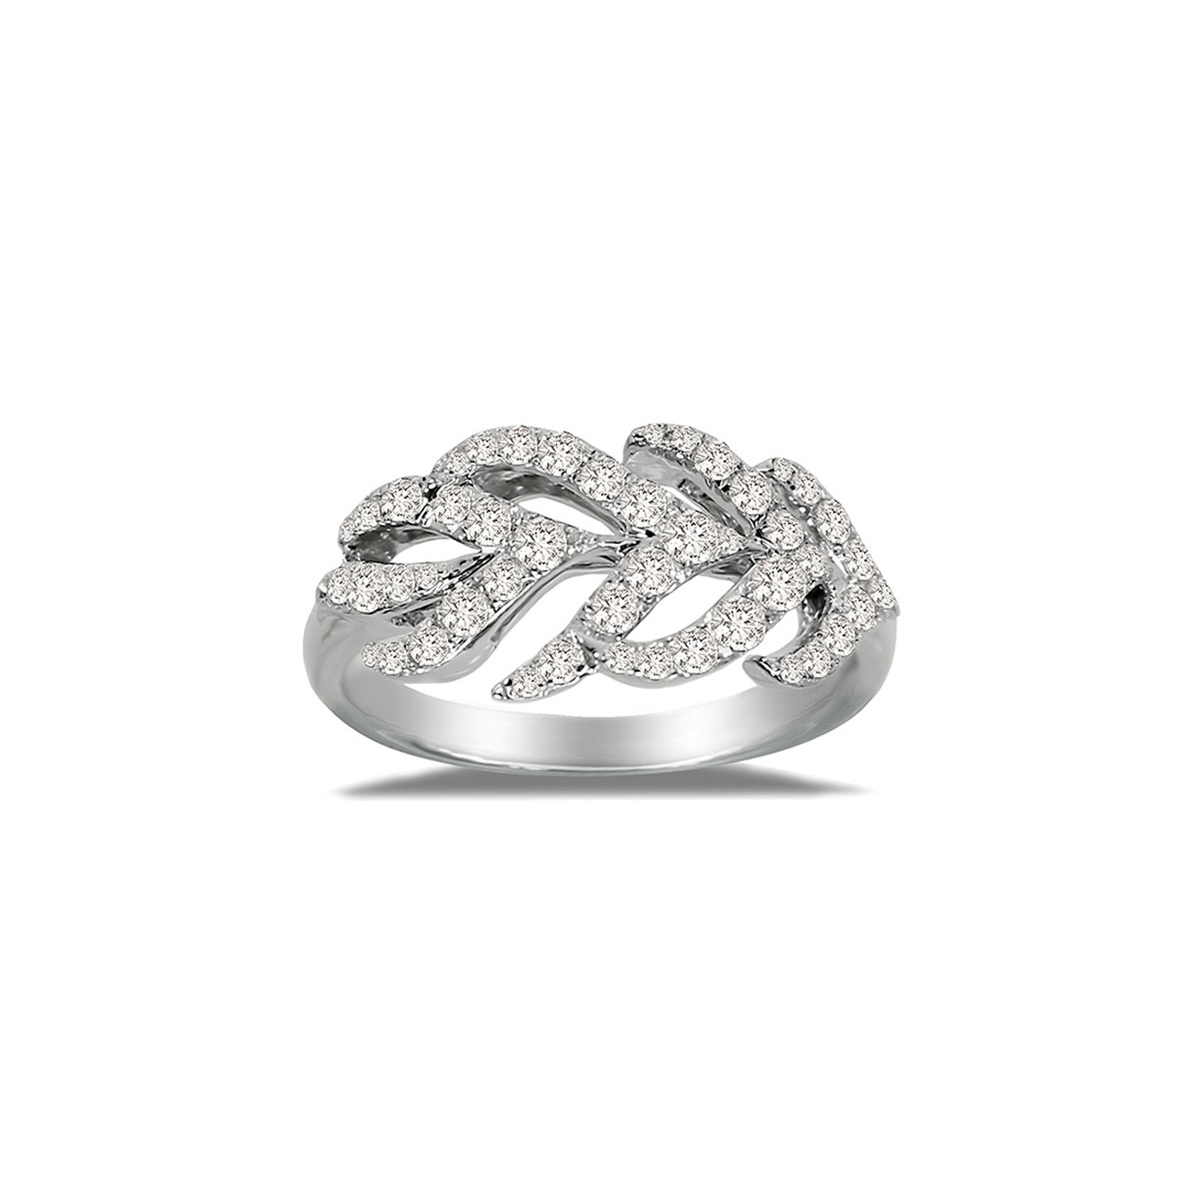 Velkoobchodní prsten OEM ODM 18K White Gold & Diamond Feather Ring nebo prsten ze sterlingového stříbra výrobce OEM/ODM Jewelry